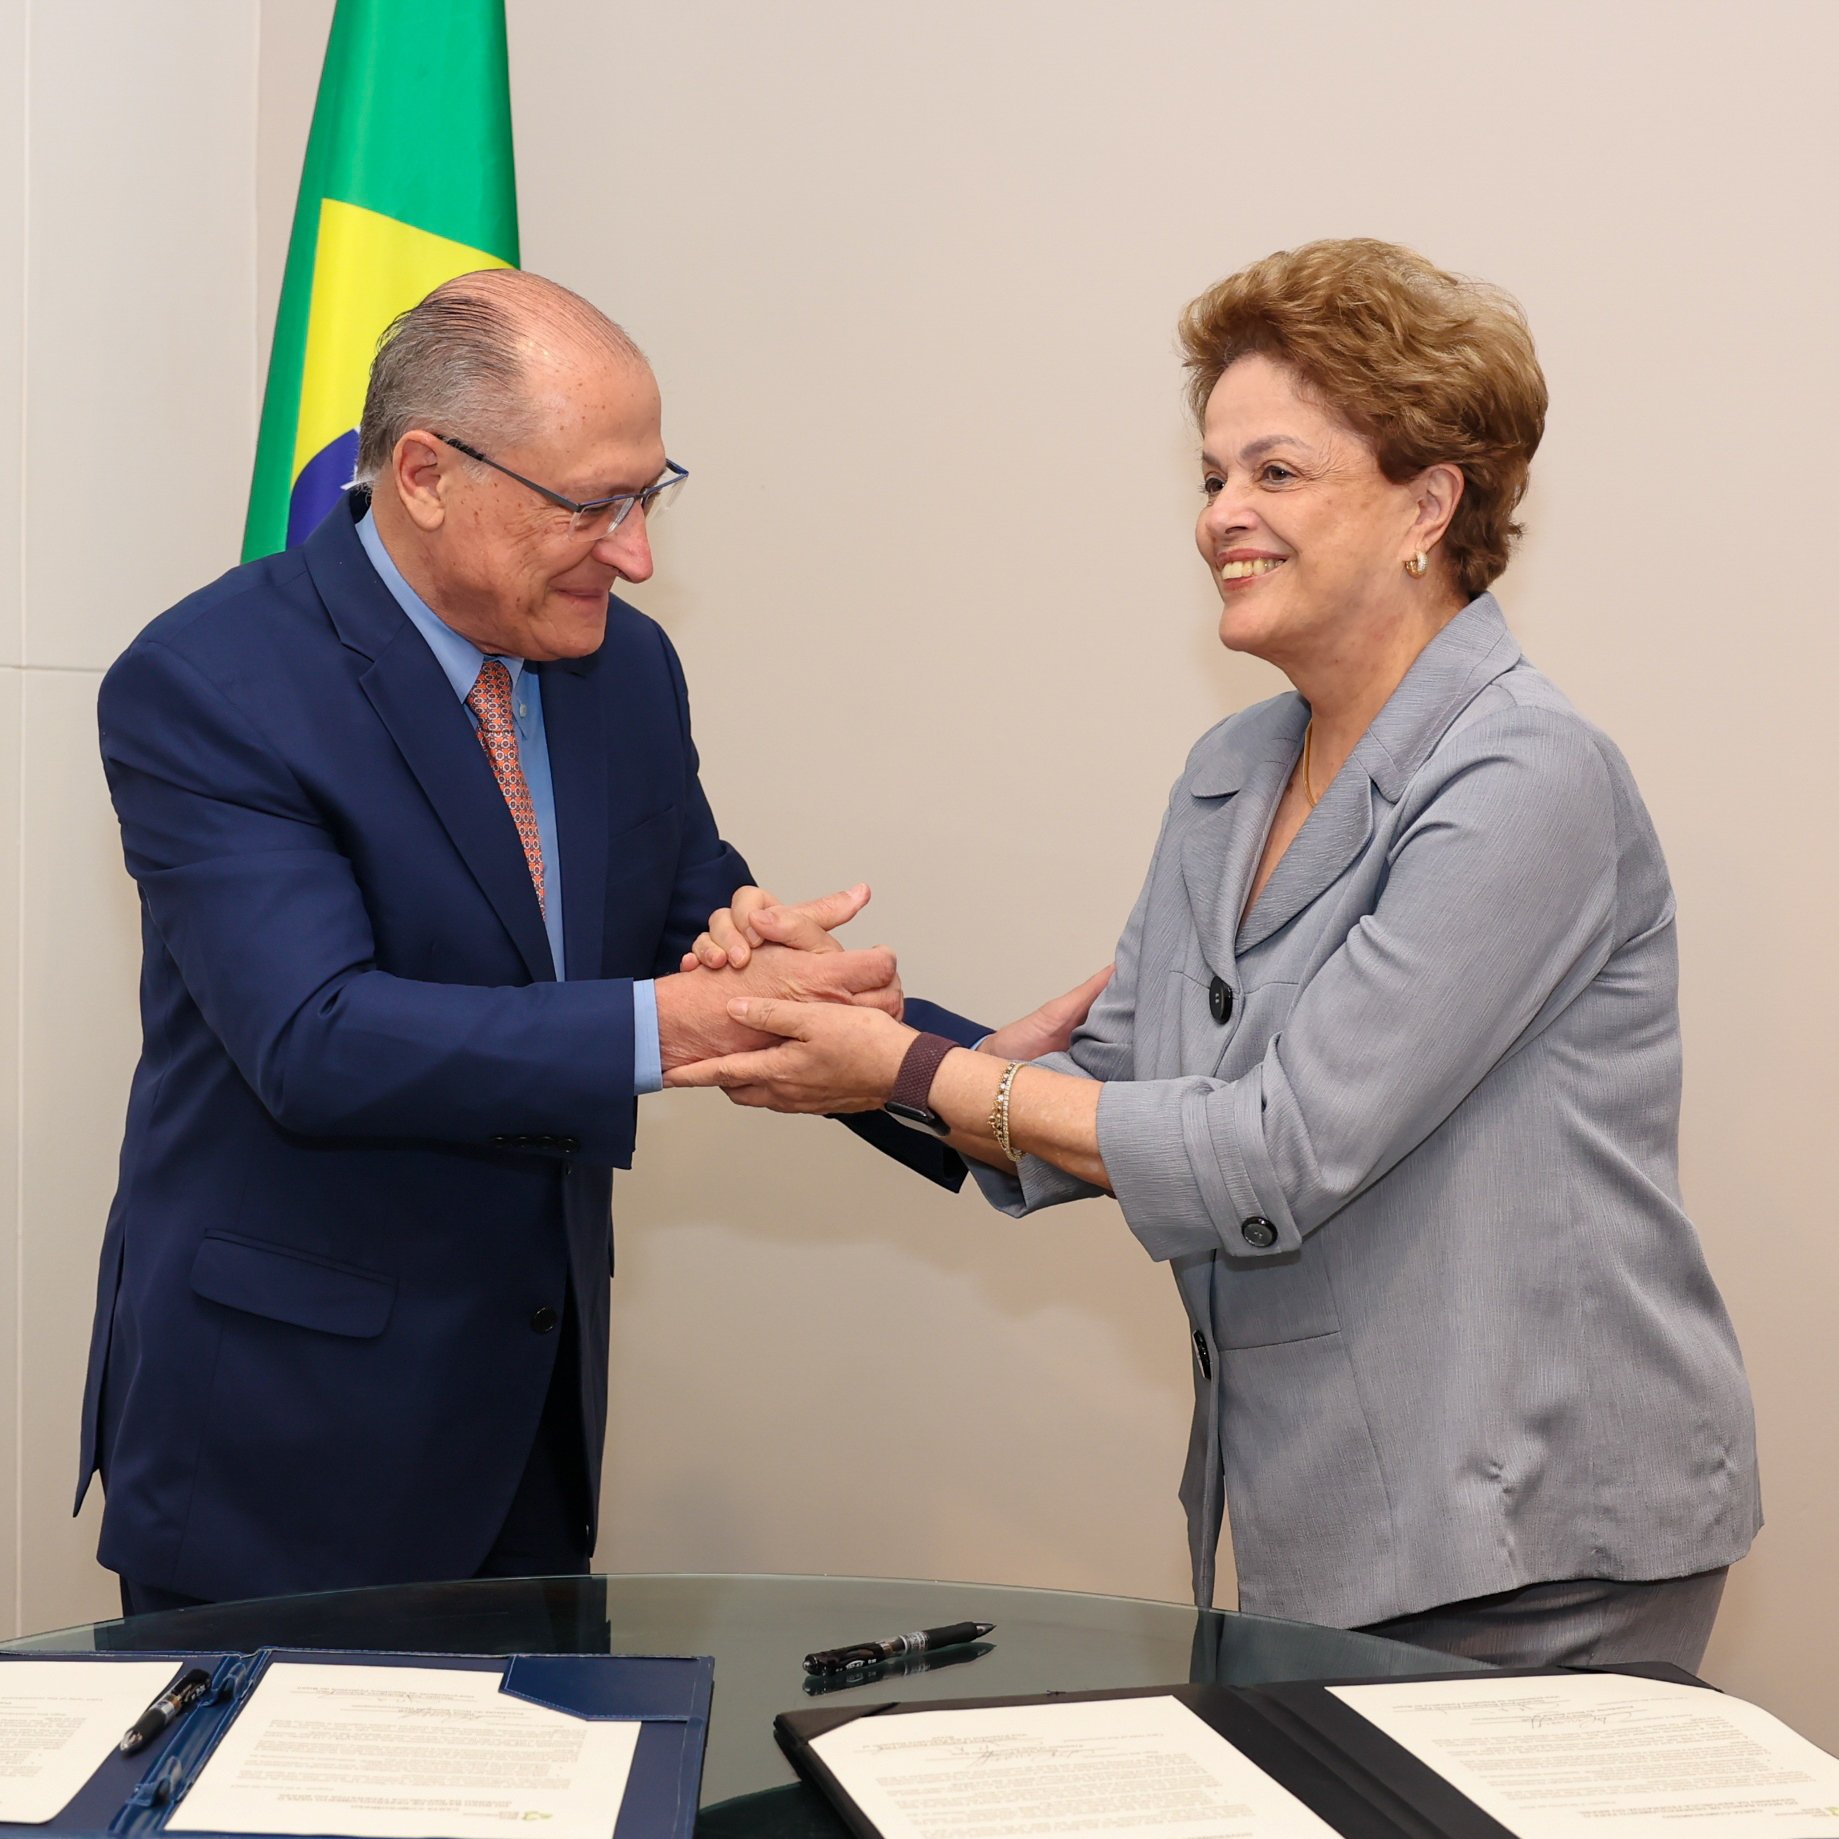 Banco dos Brics não impõe condições aos países membros, diz Dilma sobre empréstimos ao Rio Grande do Sul